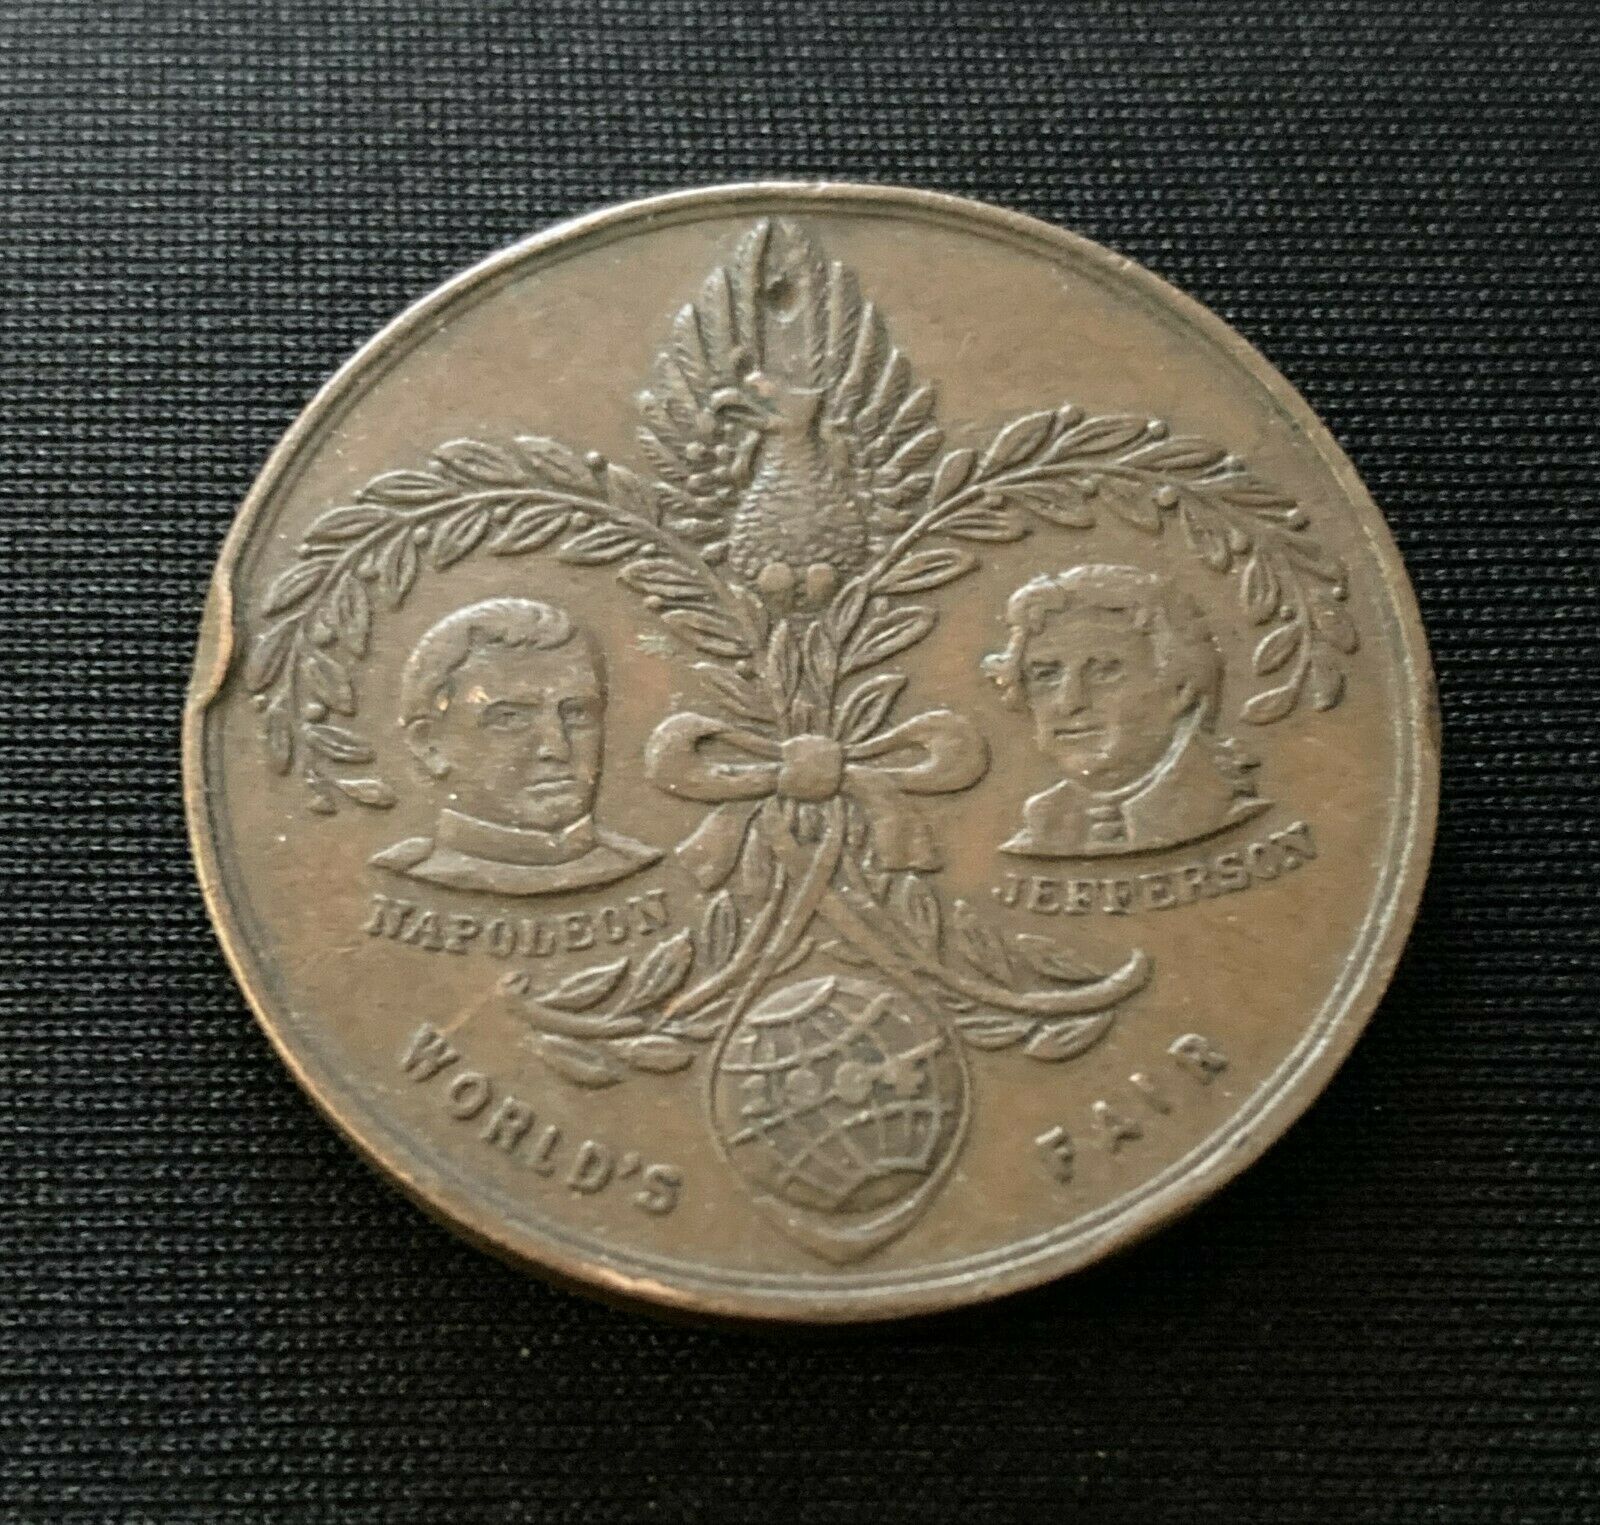 1904 Louisiana Purchase Exposition - St. Louis World's Fair - Coin Token Medal